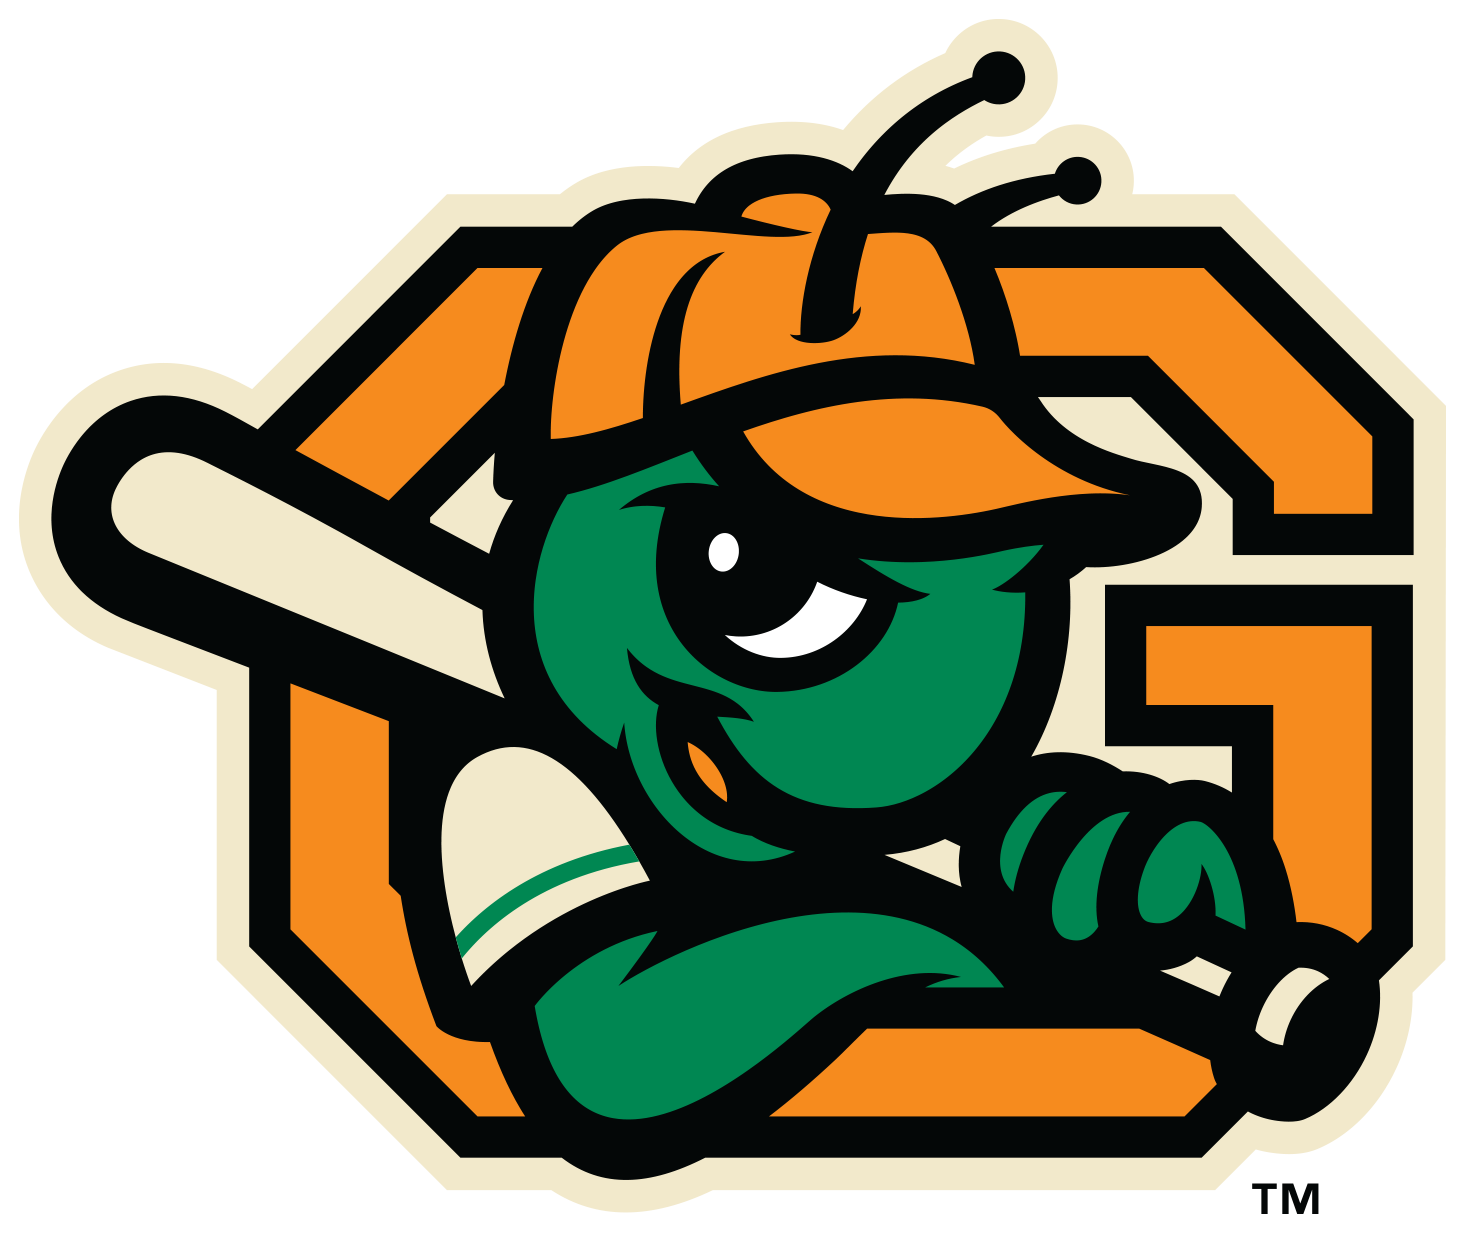 Greensboro Grasshopper logo